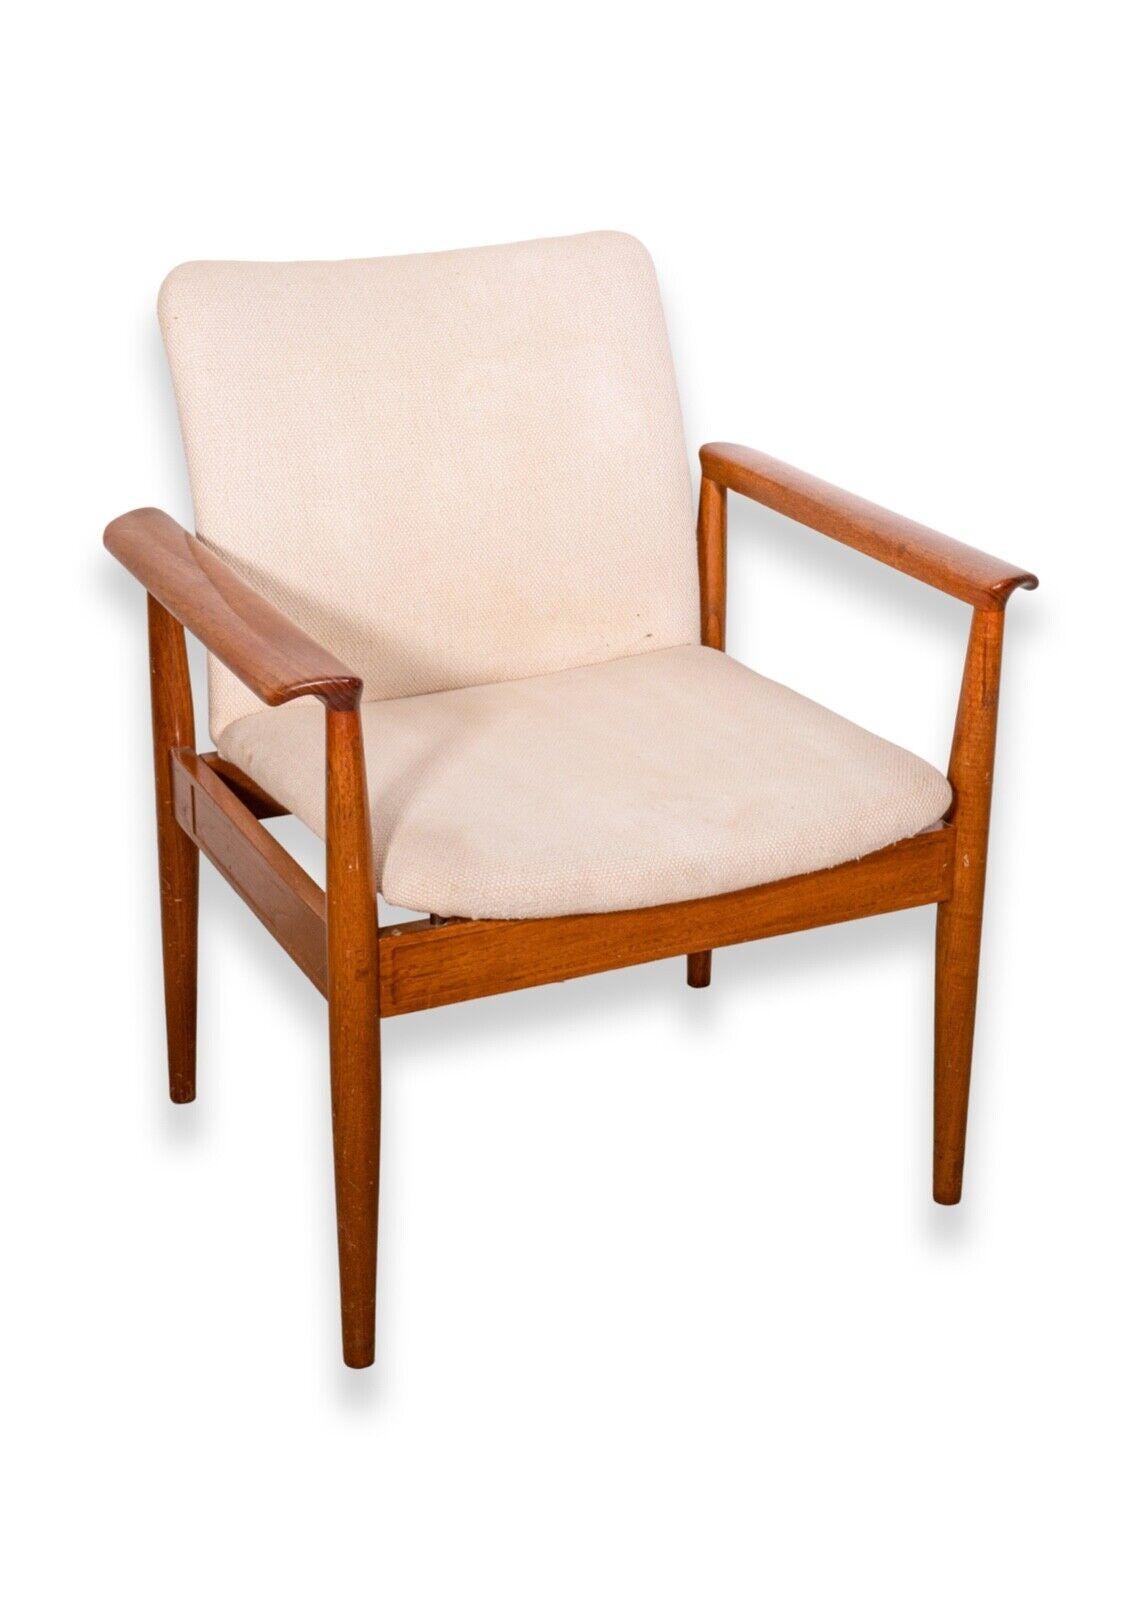 Ein anspruchsvolles Paar moderner Sessel, entworfen von Finn Juhl für France & Son, Dänemark. Bekannt unter dem Namen Diplomat Chair, Modell 209. Produziert in den 1960er Jahren. Ein schlanker Teakholzrahmen mit neutraler cremefarbener Polsterung.